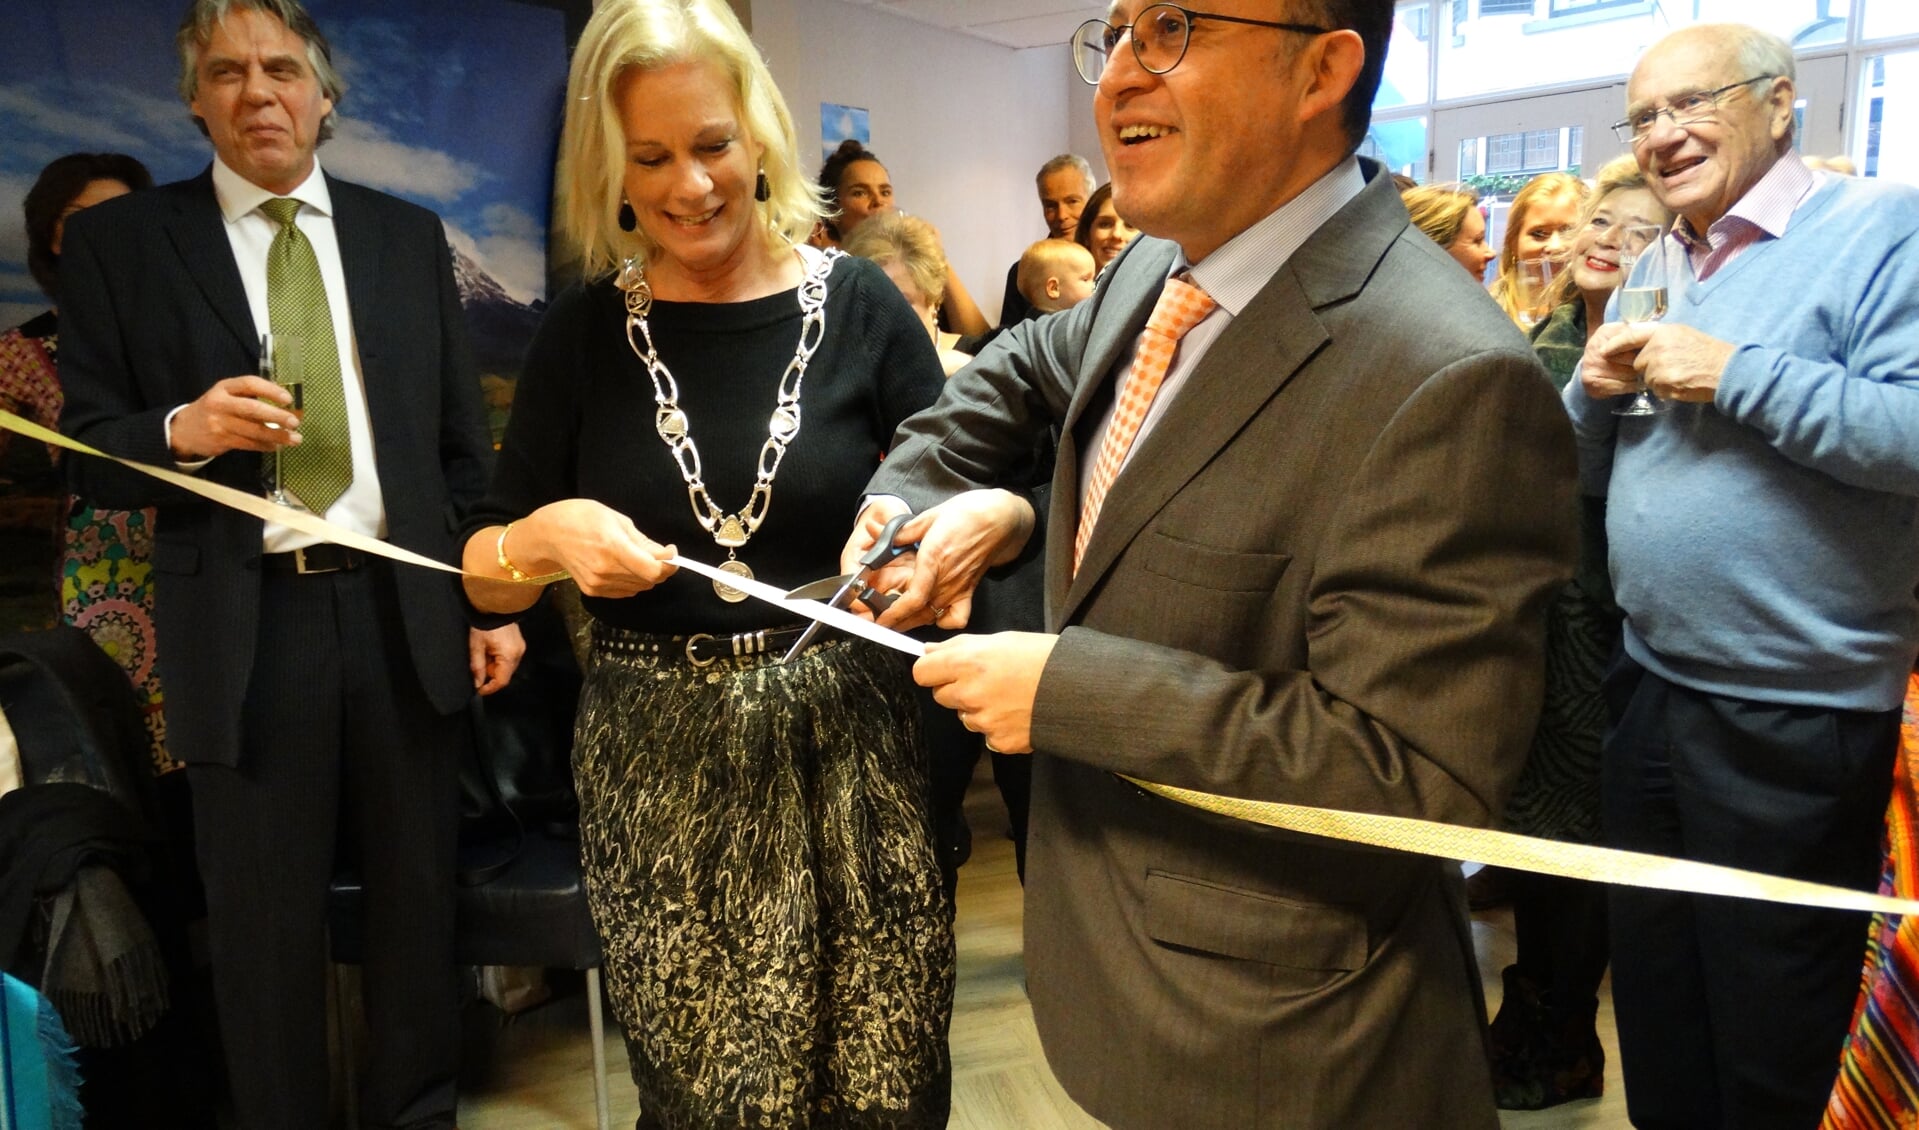 De ambassadeur van Ecuador verricht samen met de burgemeester van Zutphen de opening. Foto: PR